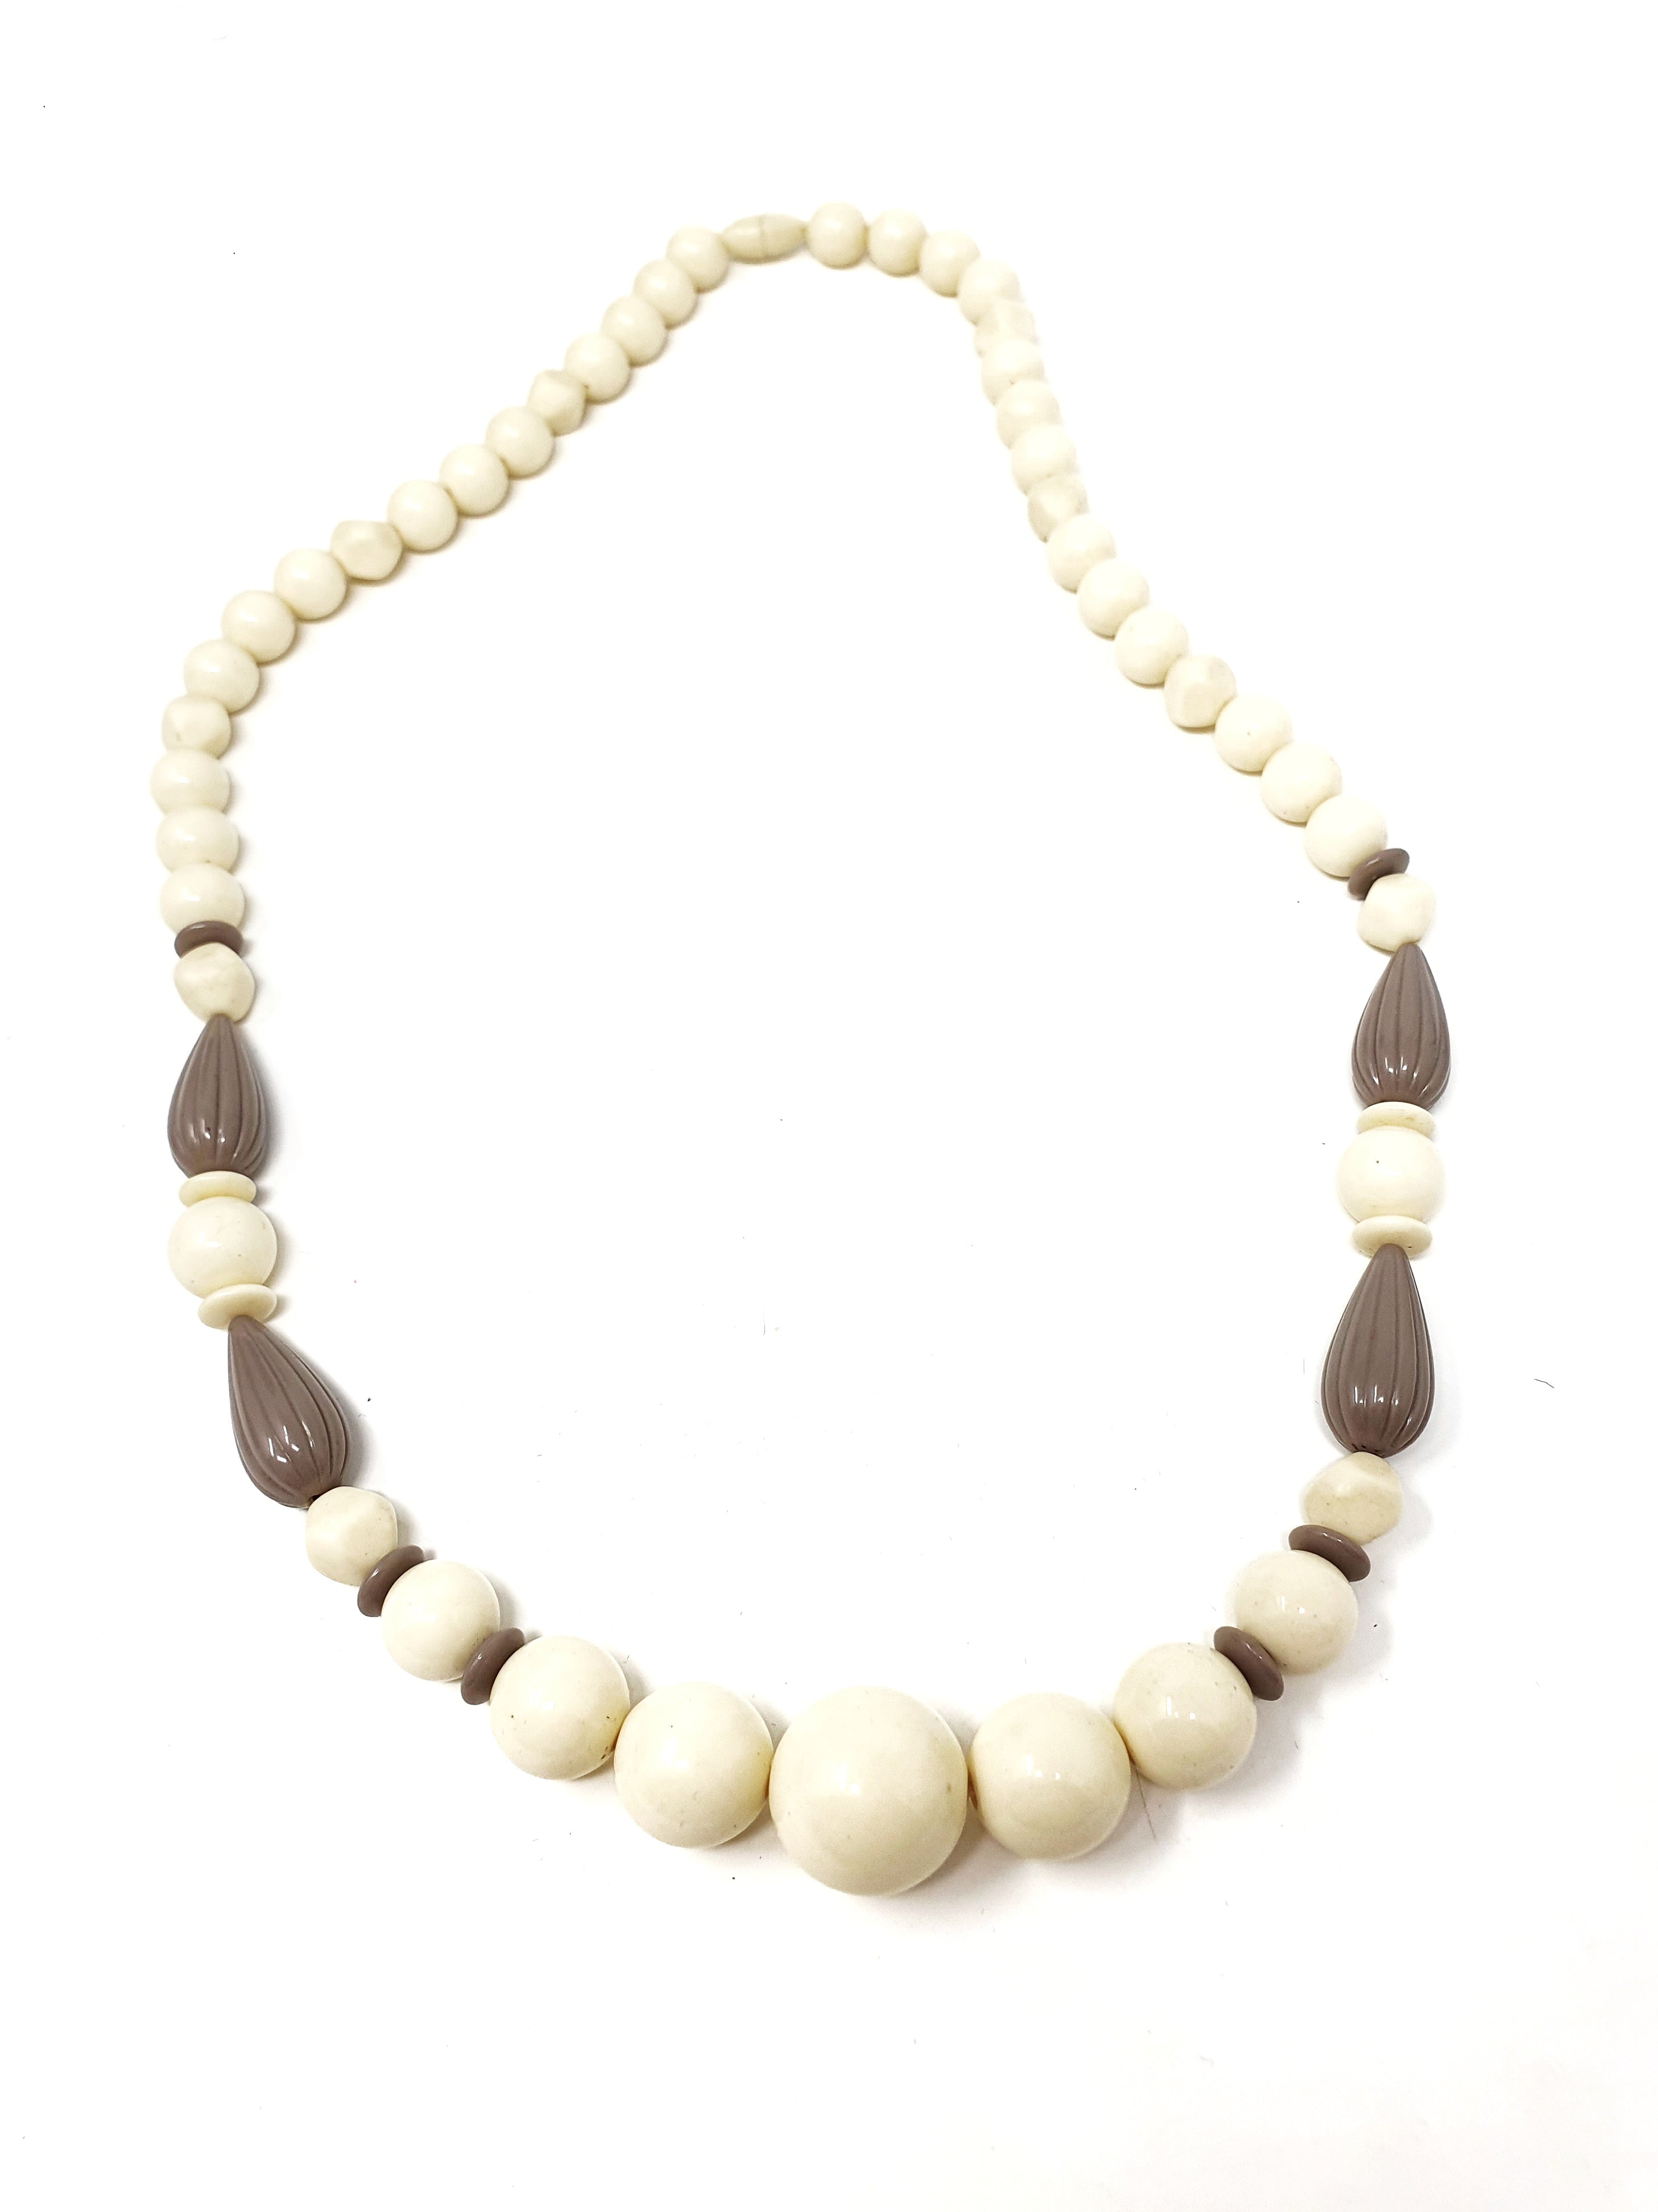 Avon "Ivoryesque Patterns" necklace 